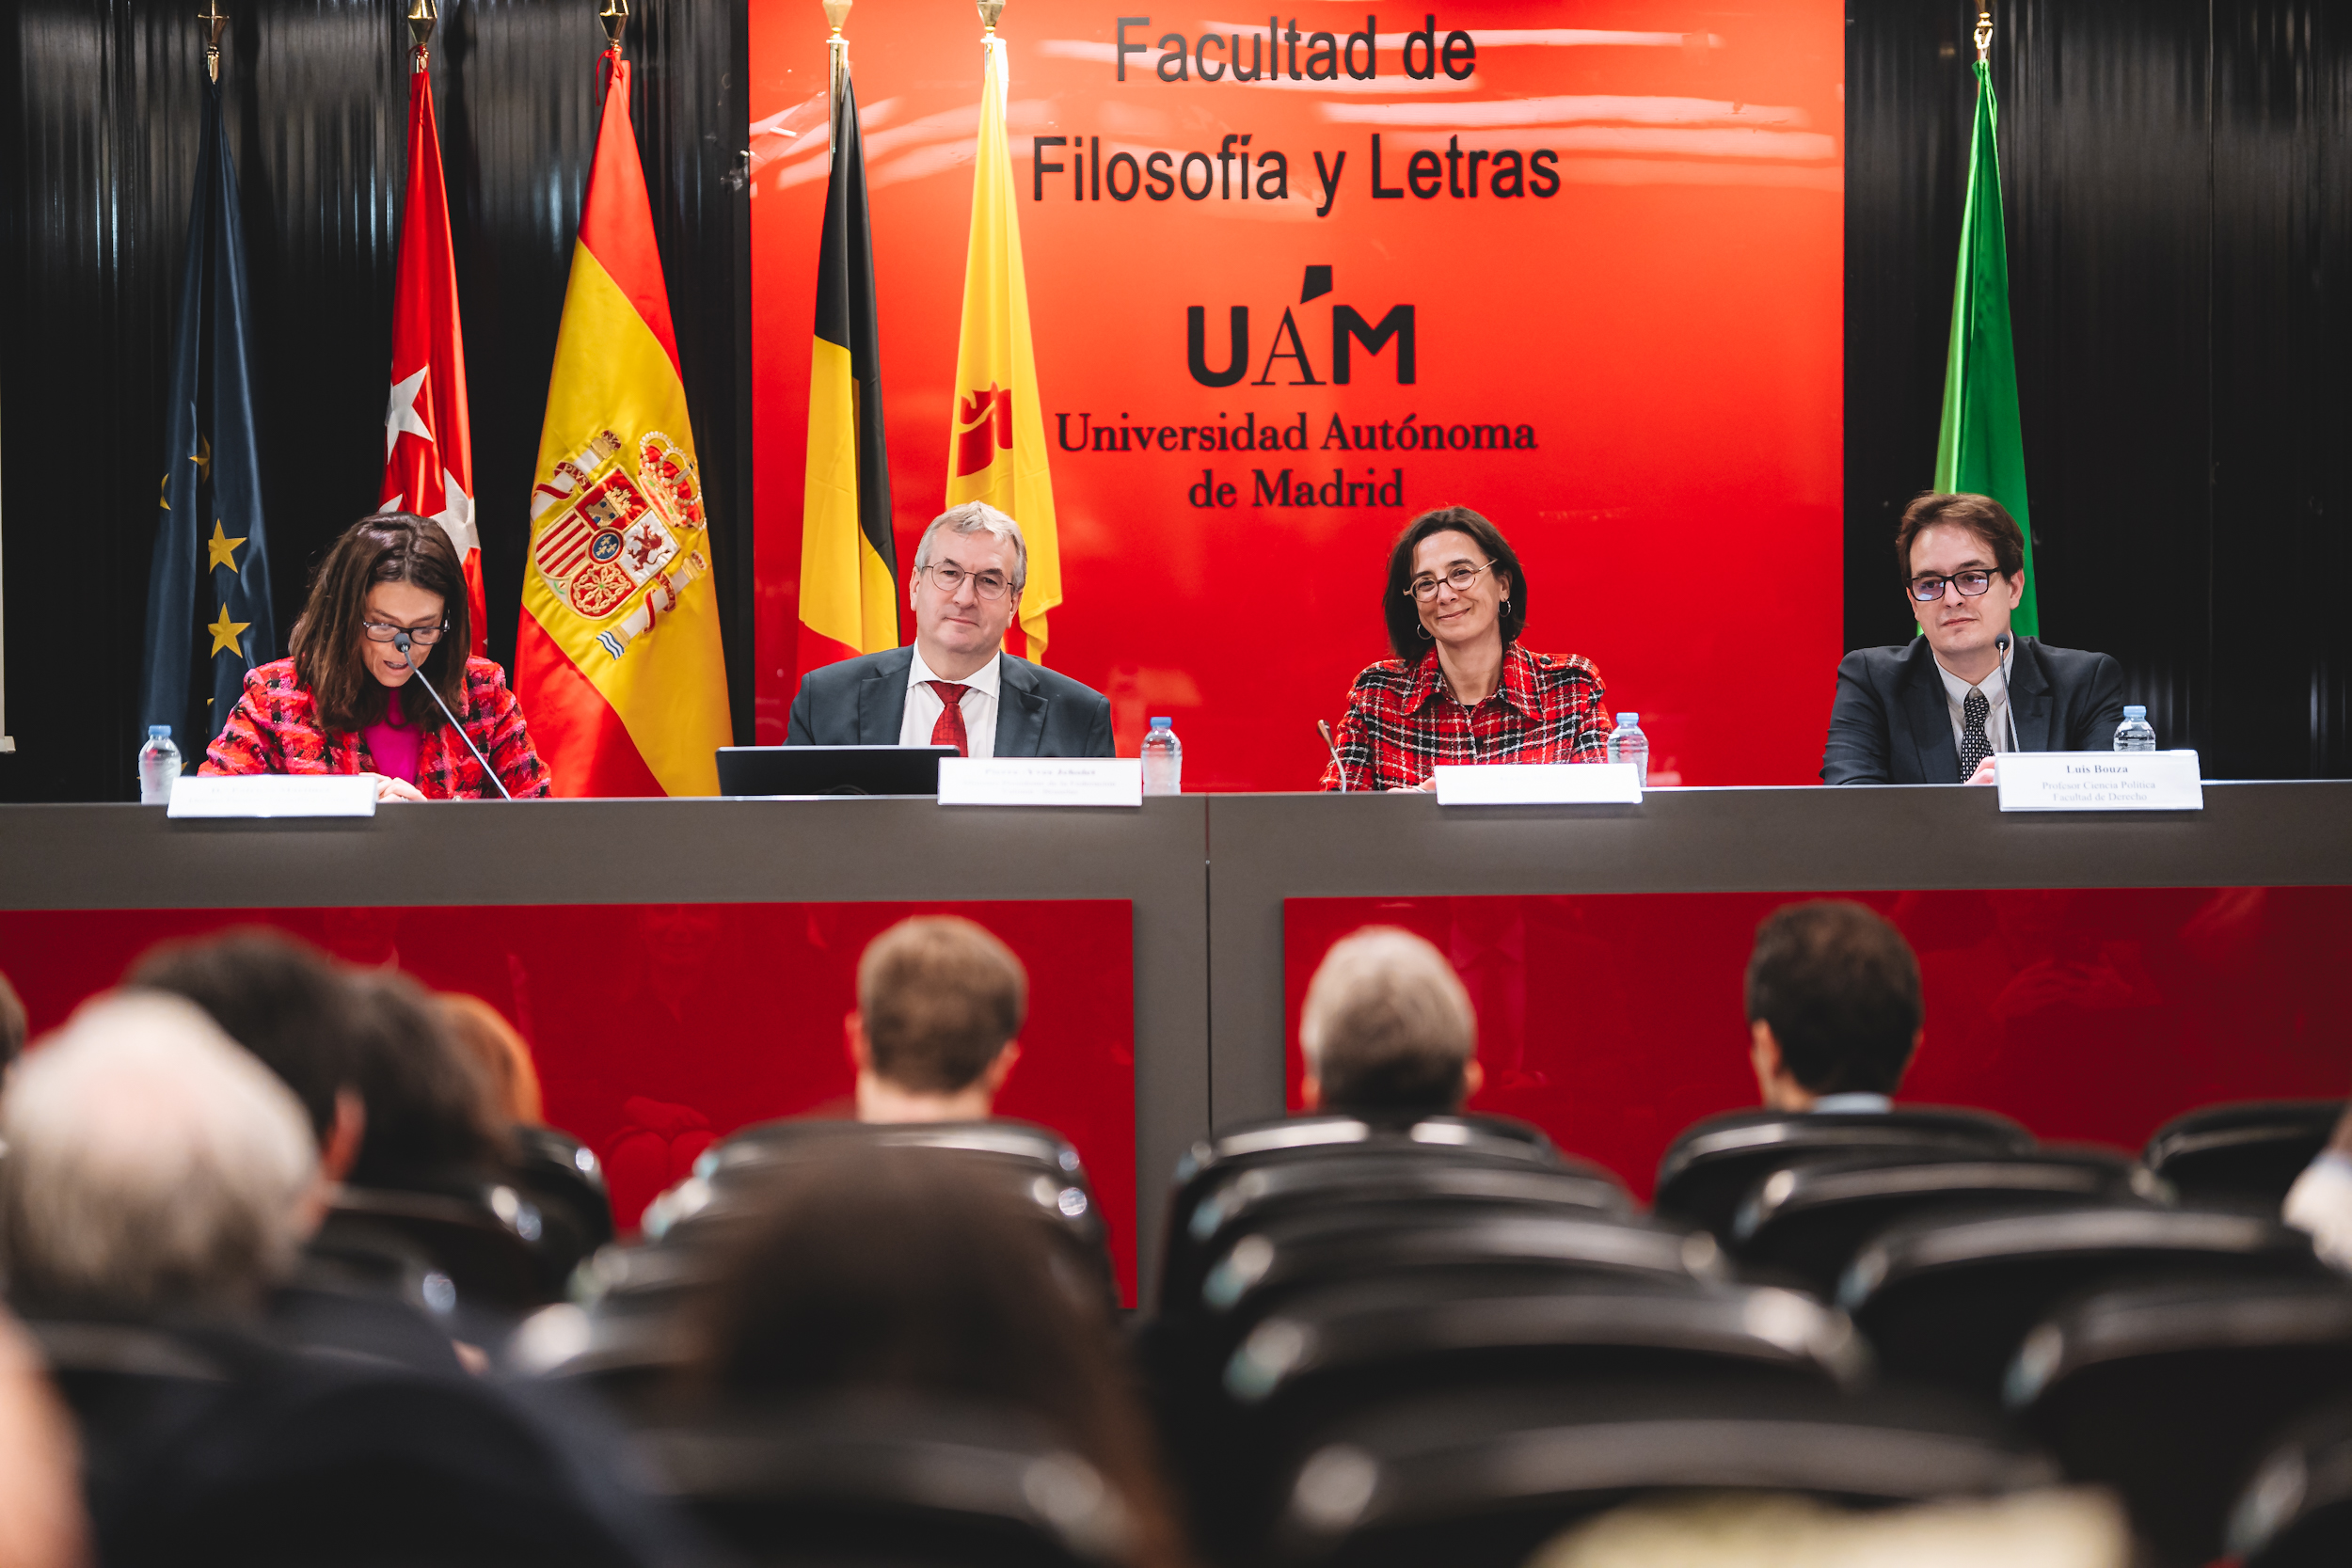 Conférence à l'Université Autonome de Madrid (UAM) (c) J. Van Belle - WBI